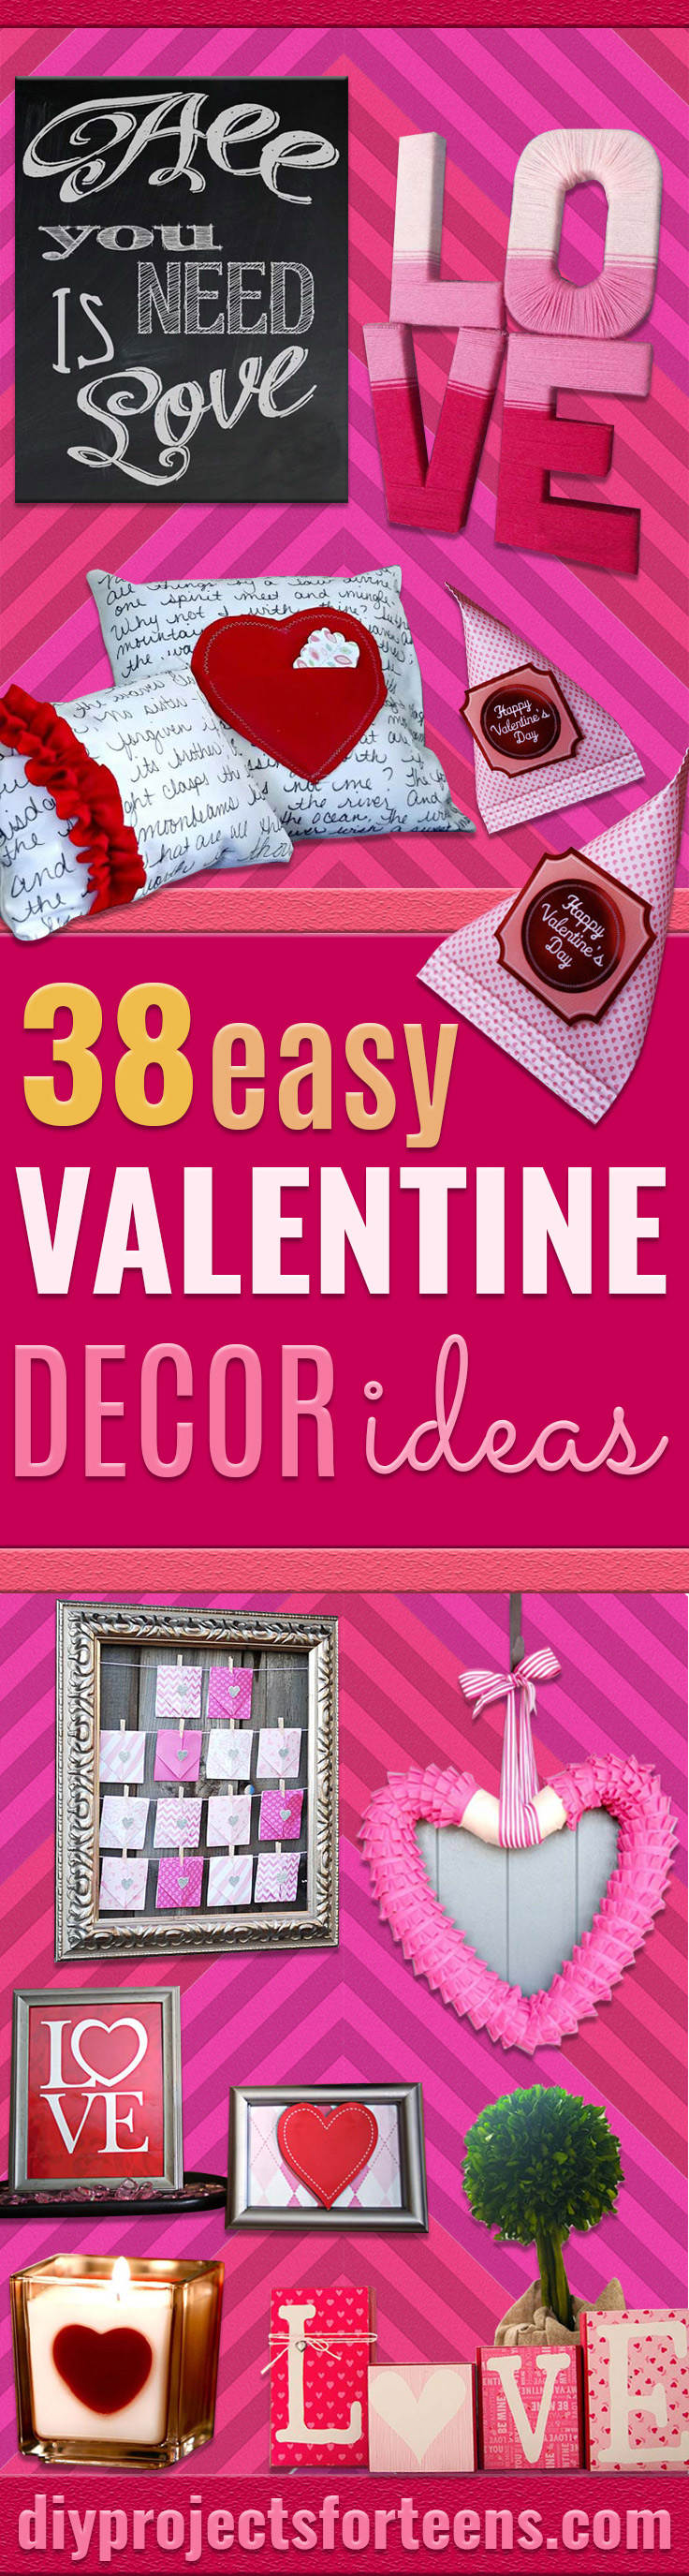 38 Easy Valentine Decor Ideas